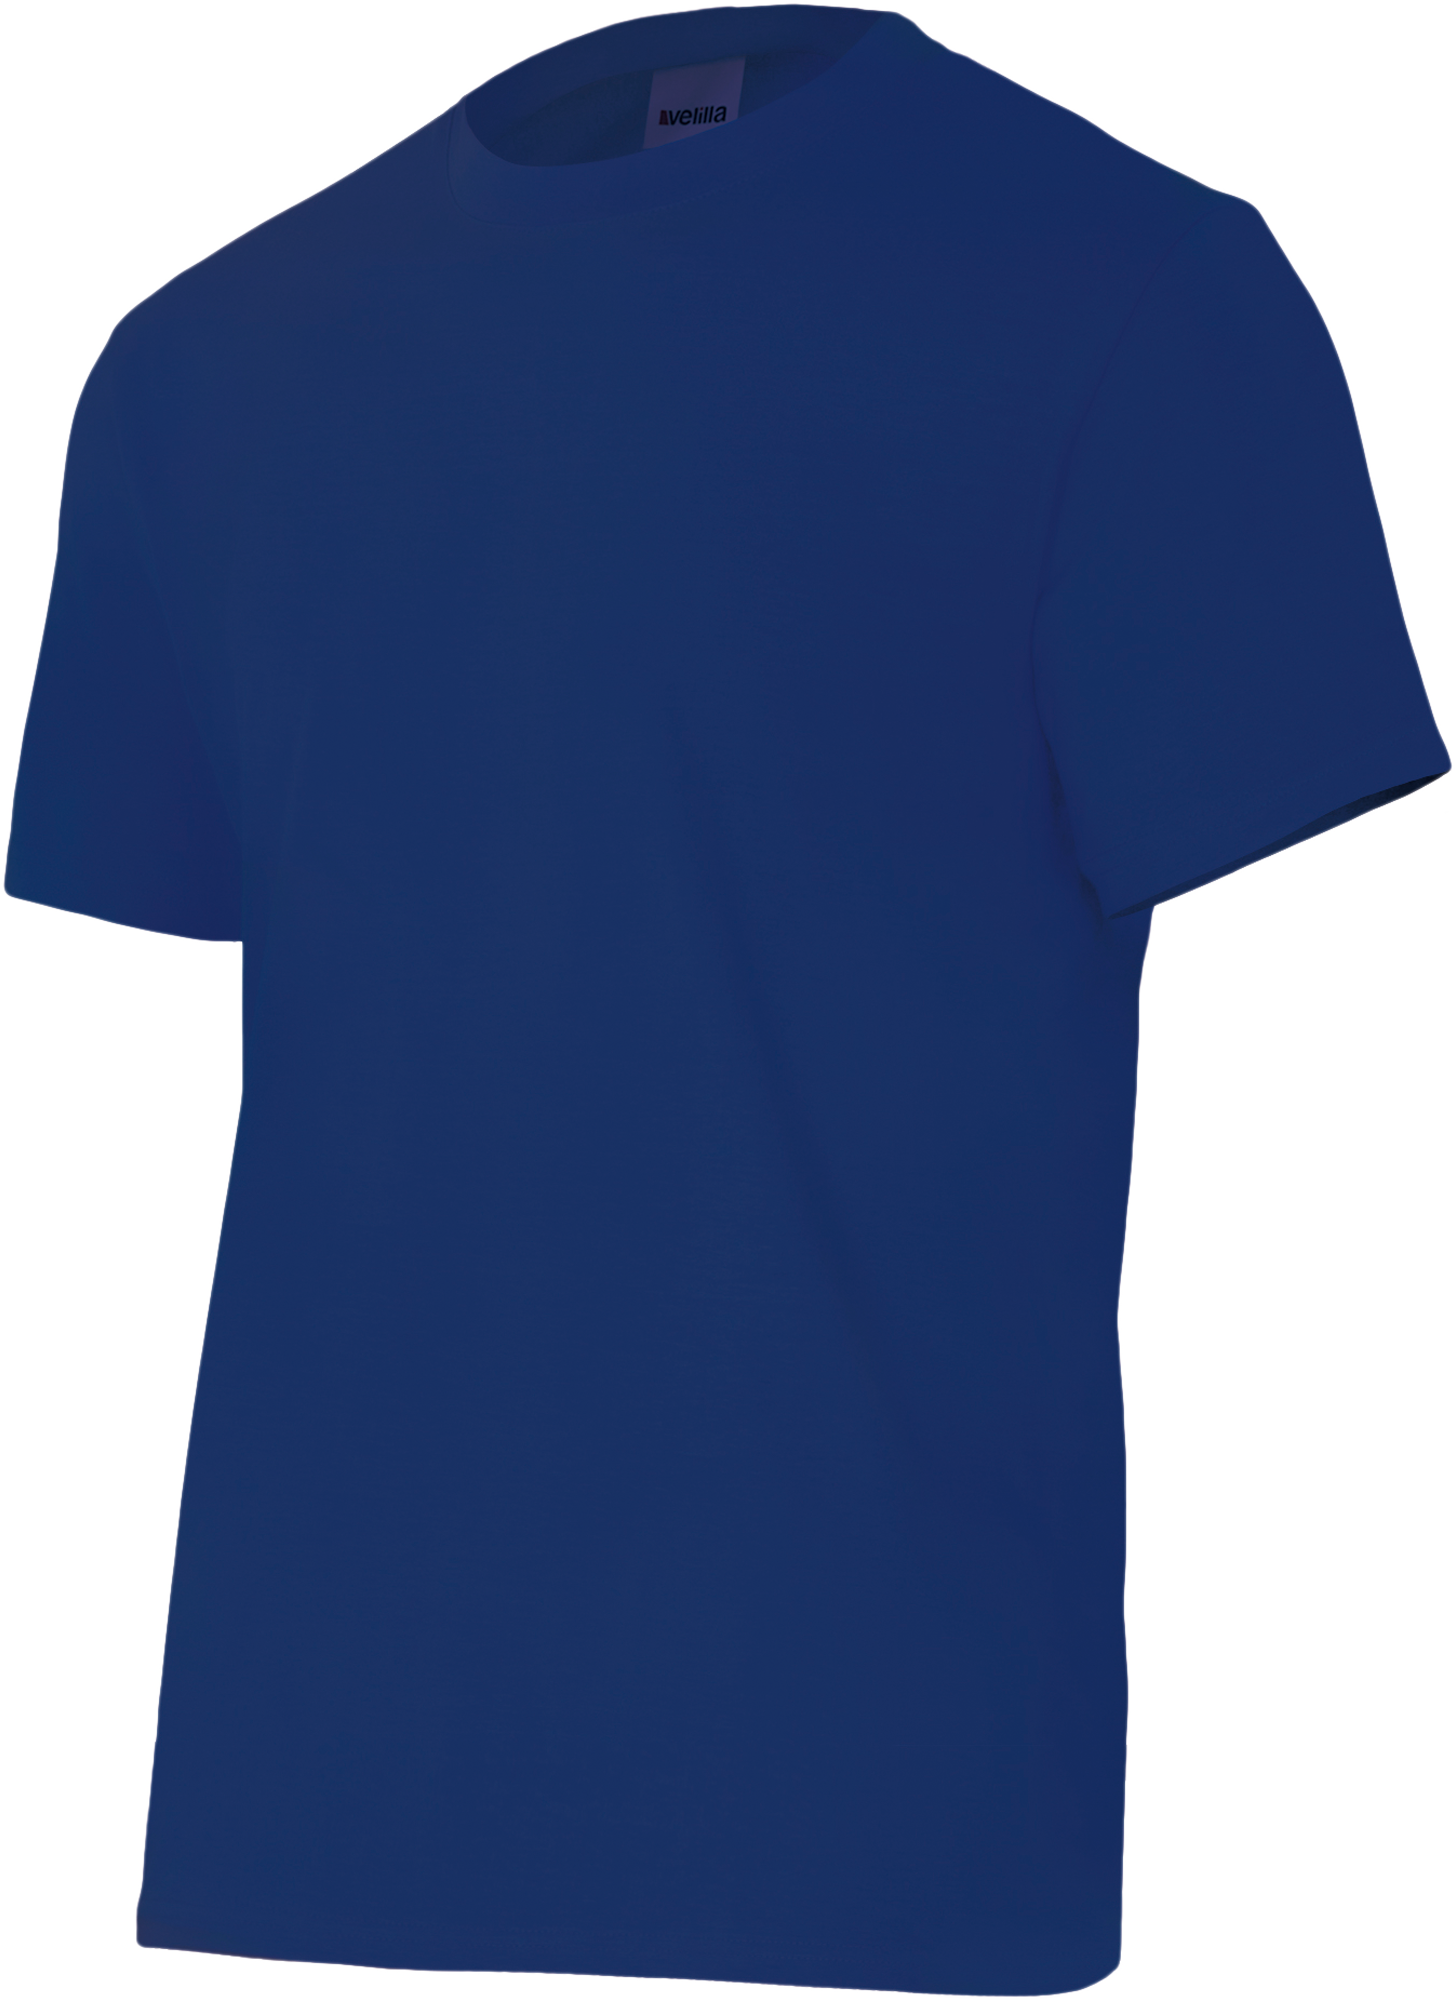 Camiseta Manga Corta Azul Marino